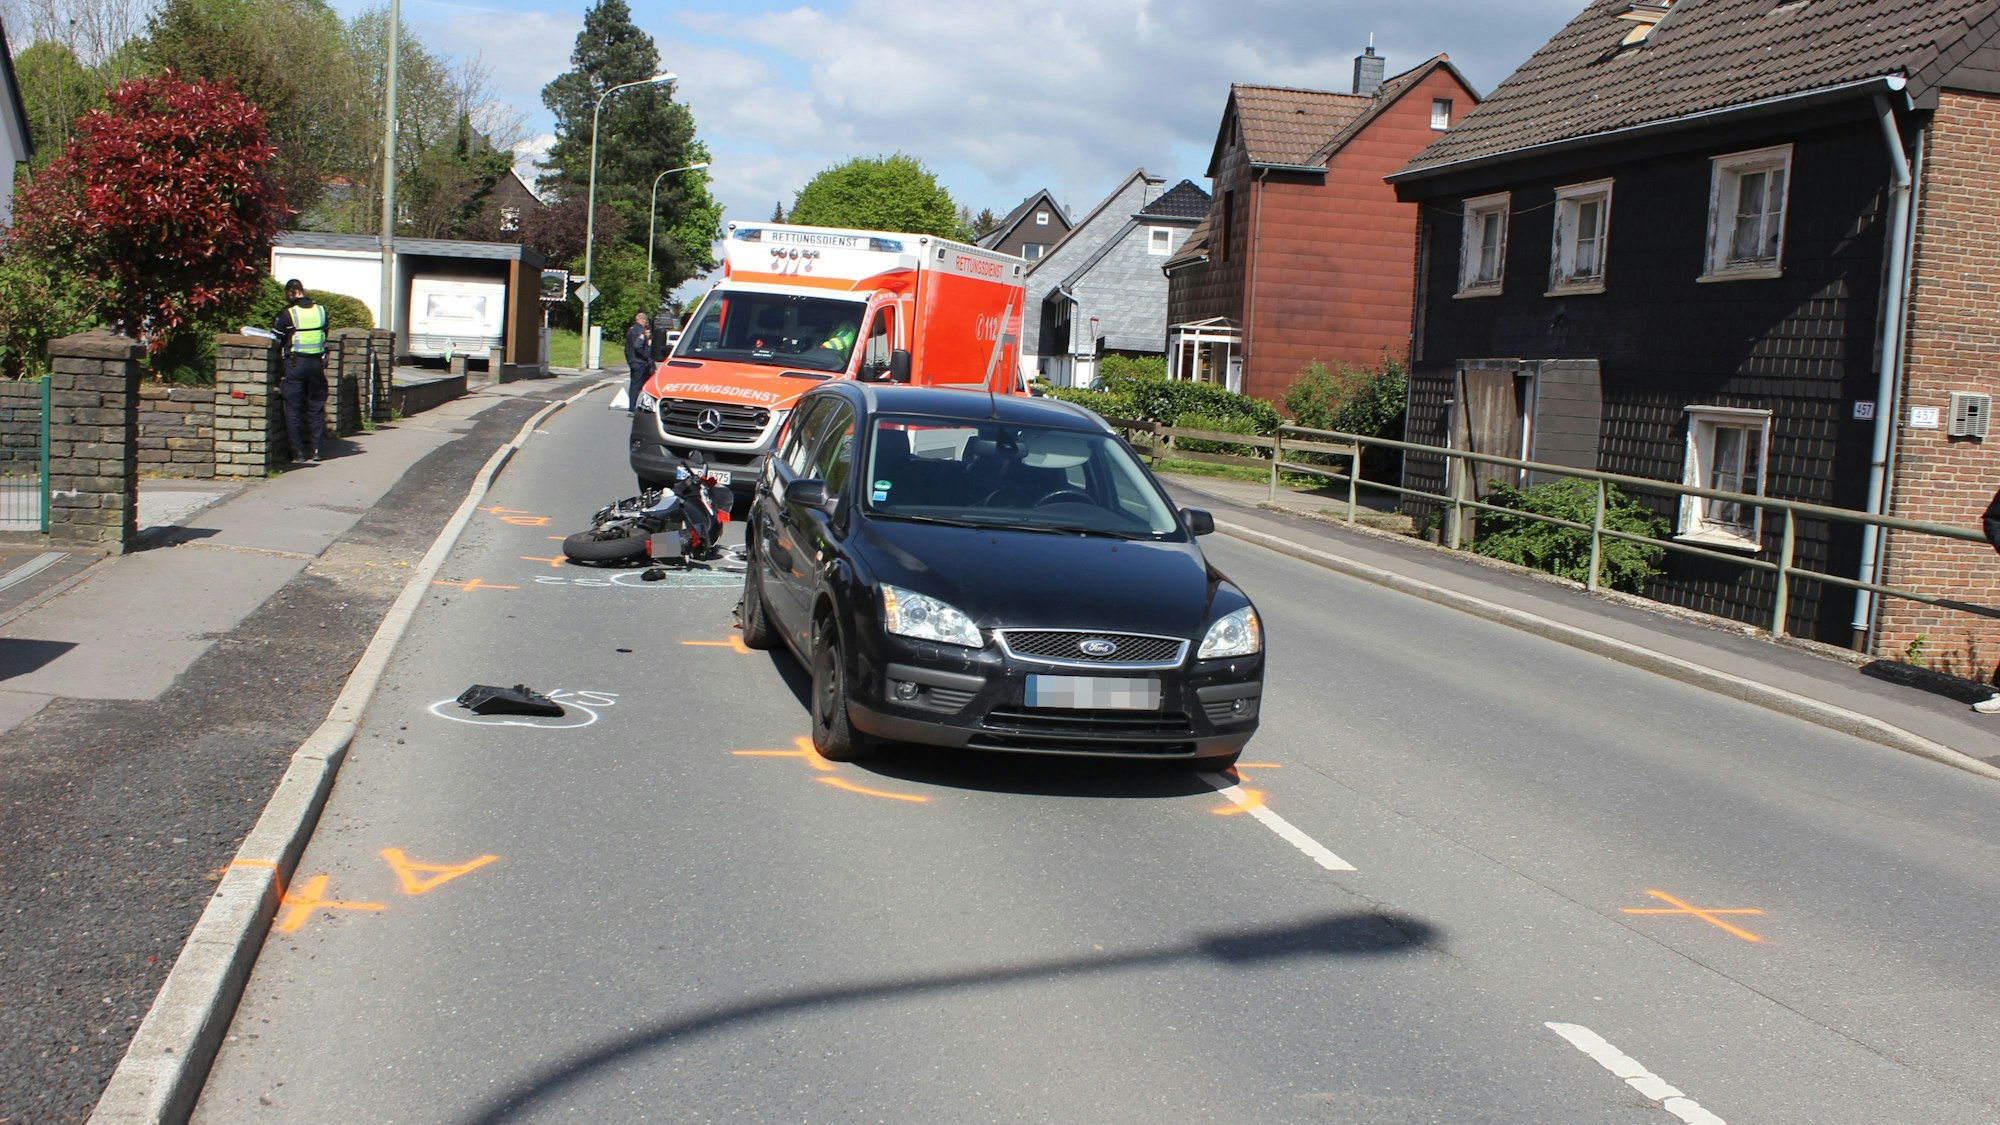 EIn Auto steht auf der Straße. Dahinter liegt ein beschädigter Motorroller vor einem Krankenwagen.